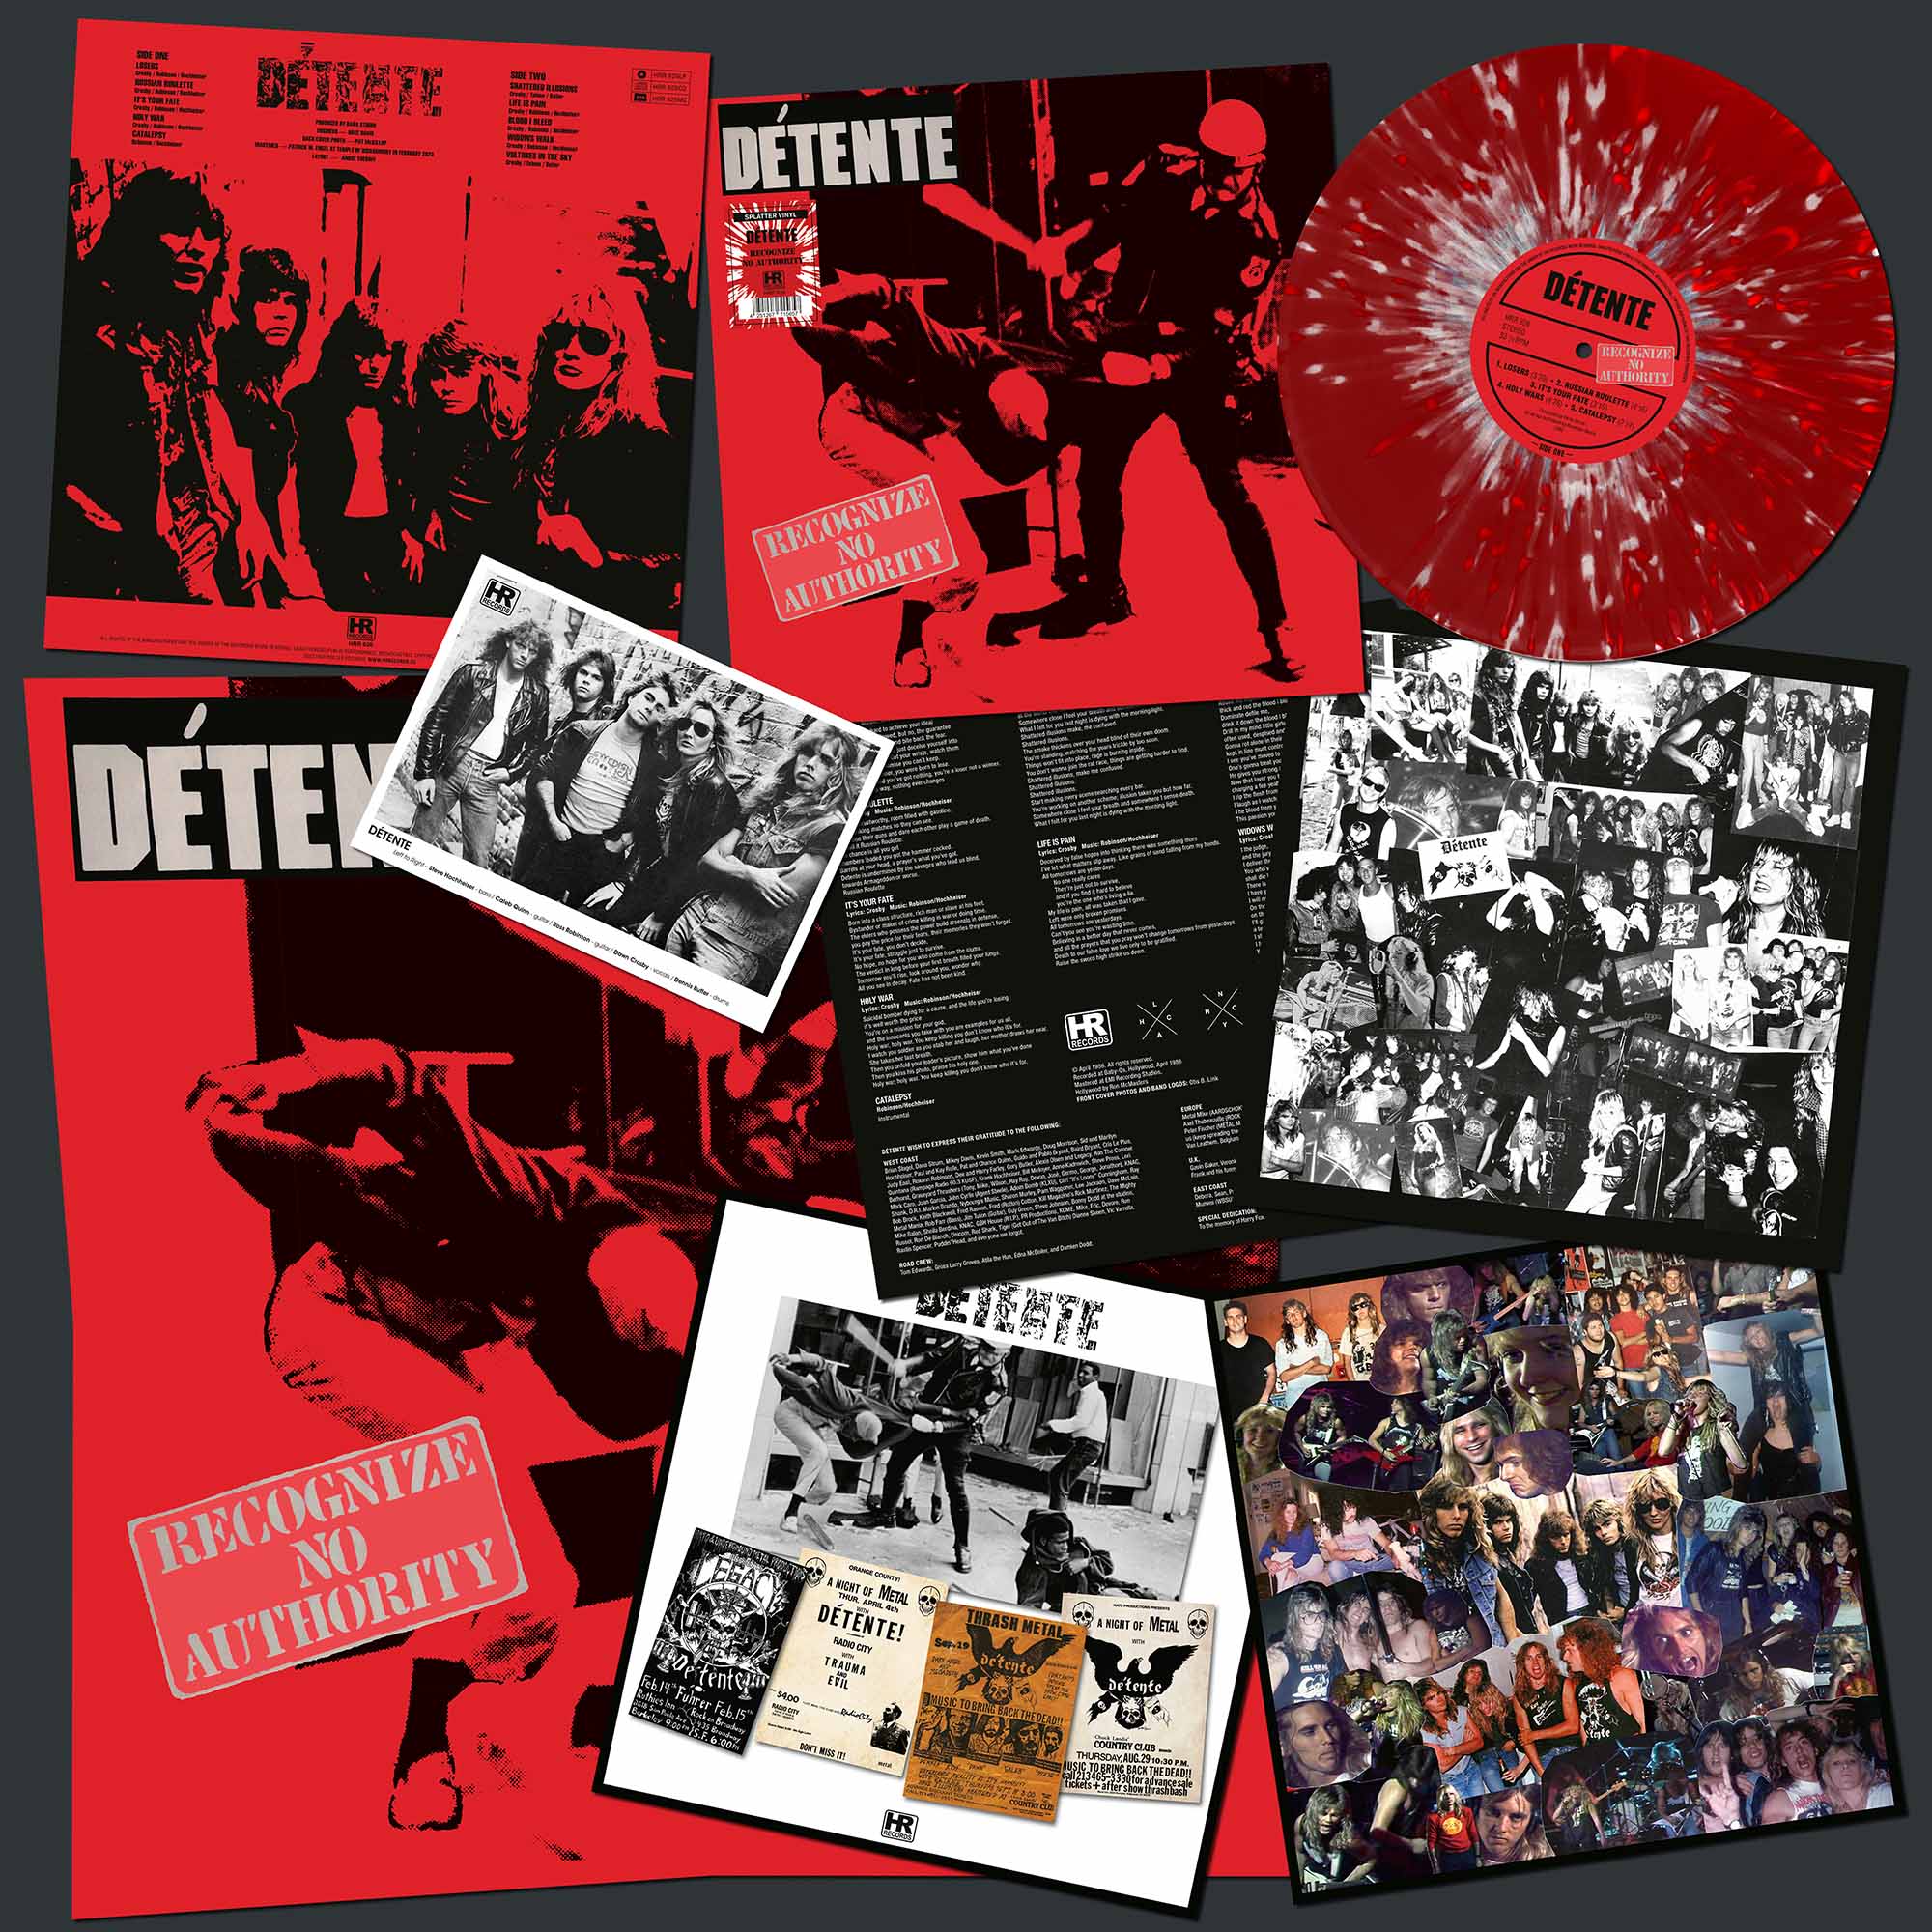 DÉTENTE - Recognize No Authority  LP